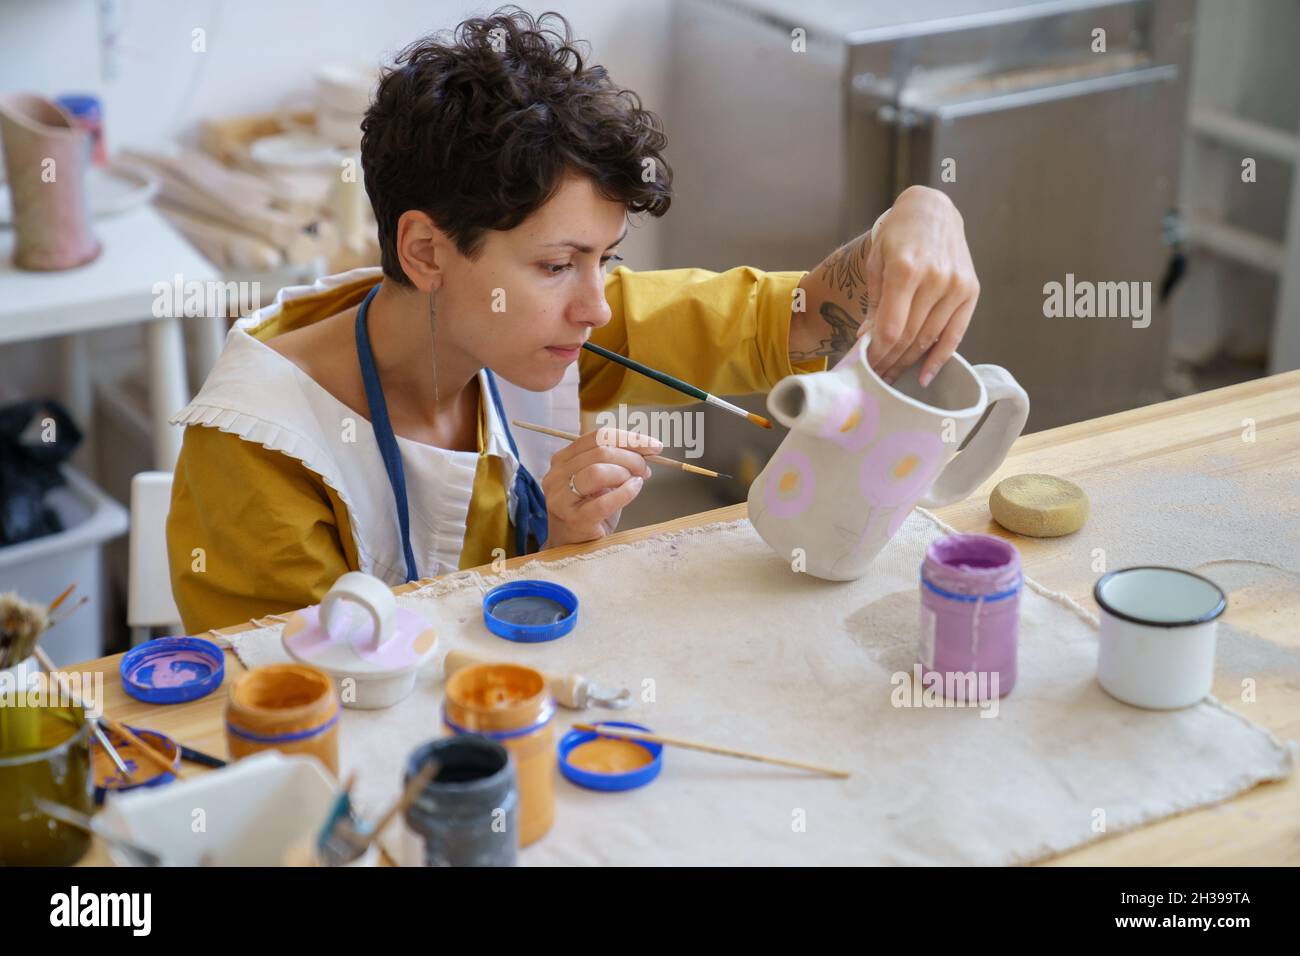 Junge Frau professionelle Töpferkünstler arbeiten im Studio. Lehrer für  Keramik Kunst Herstellung Ton Töpfer Stockfotografie - Alamy